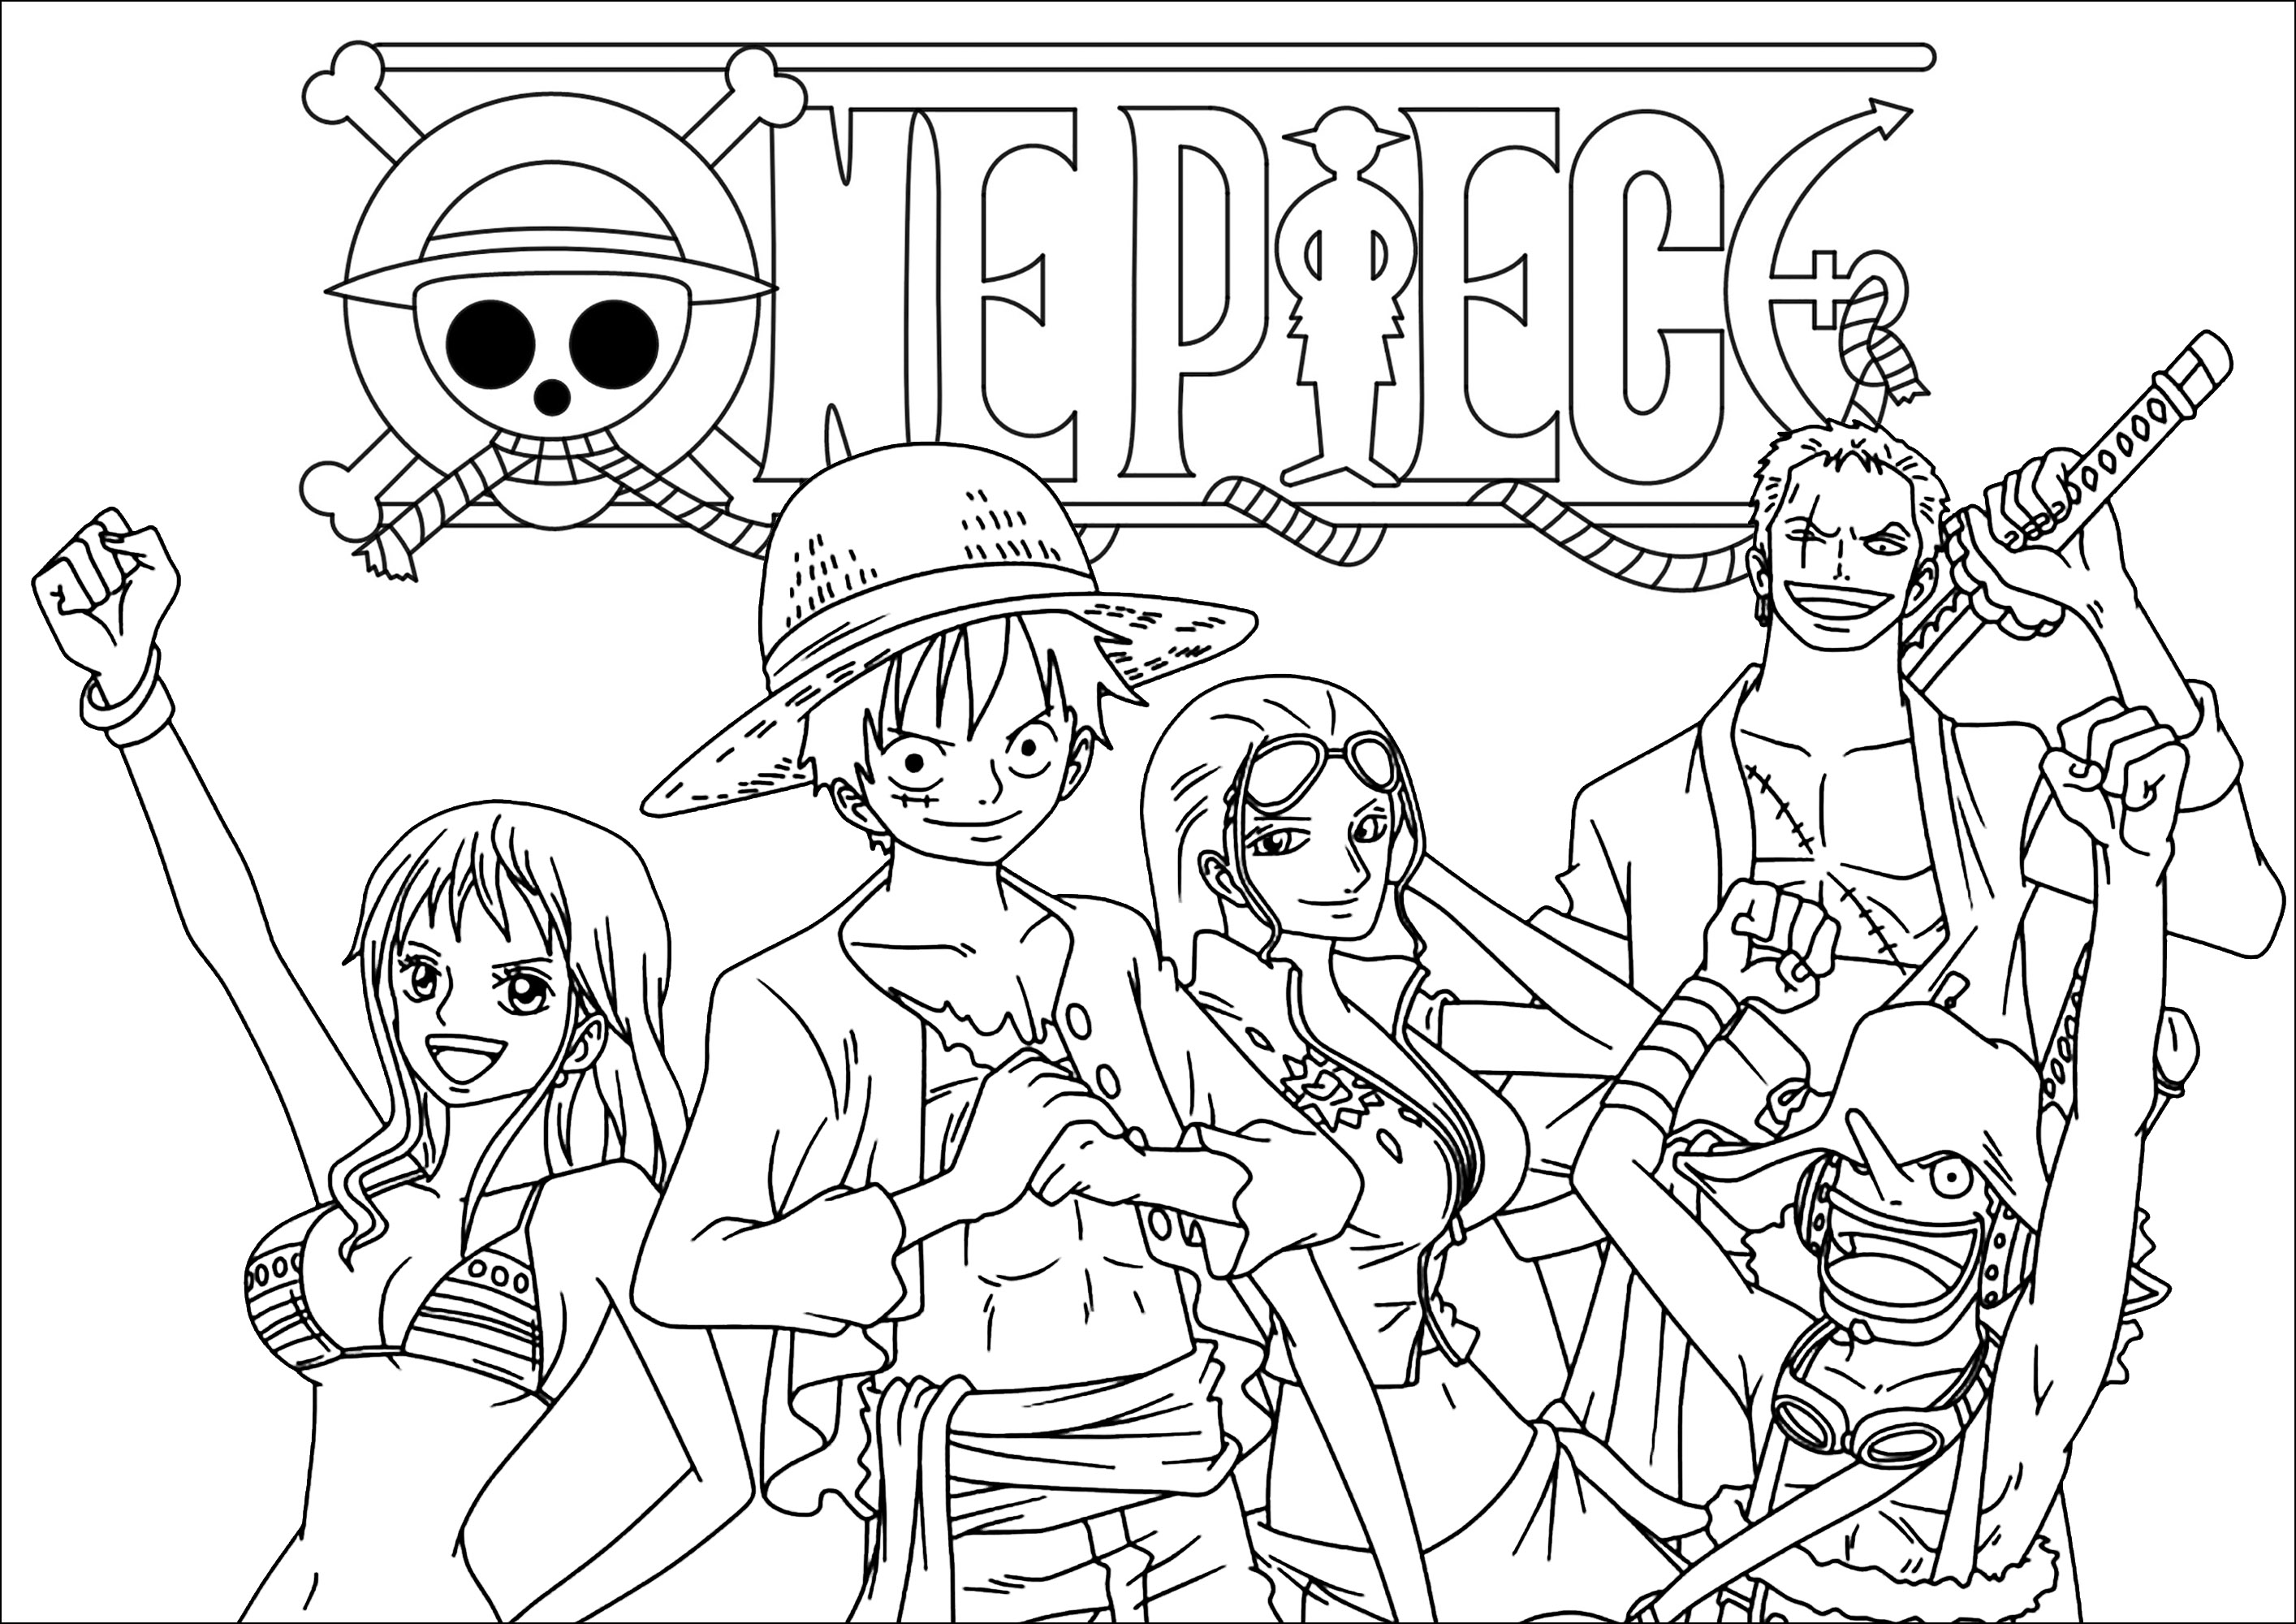 Personnages de One Piece et Logo. Retrouvez Monkey D. Luffy, Roronoa Zoro, Nami et d'autres personnages à colorier